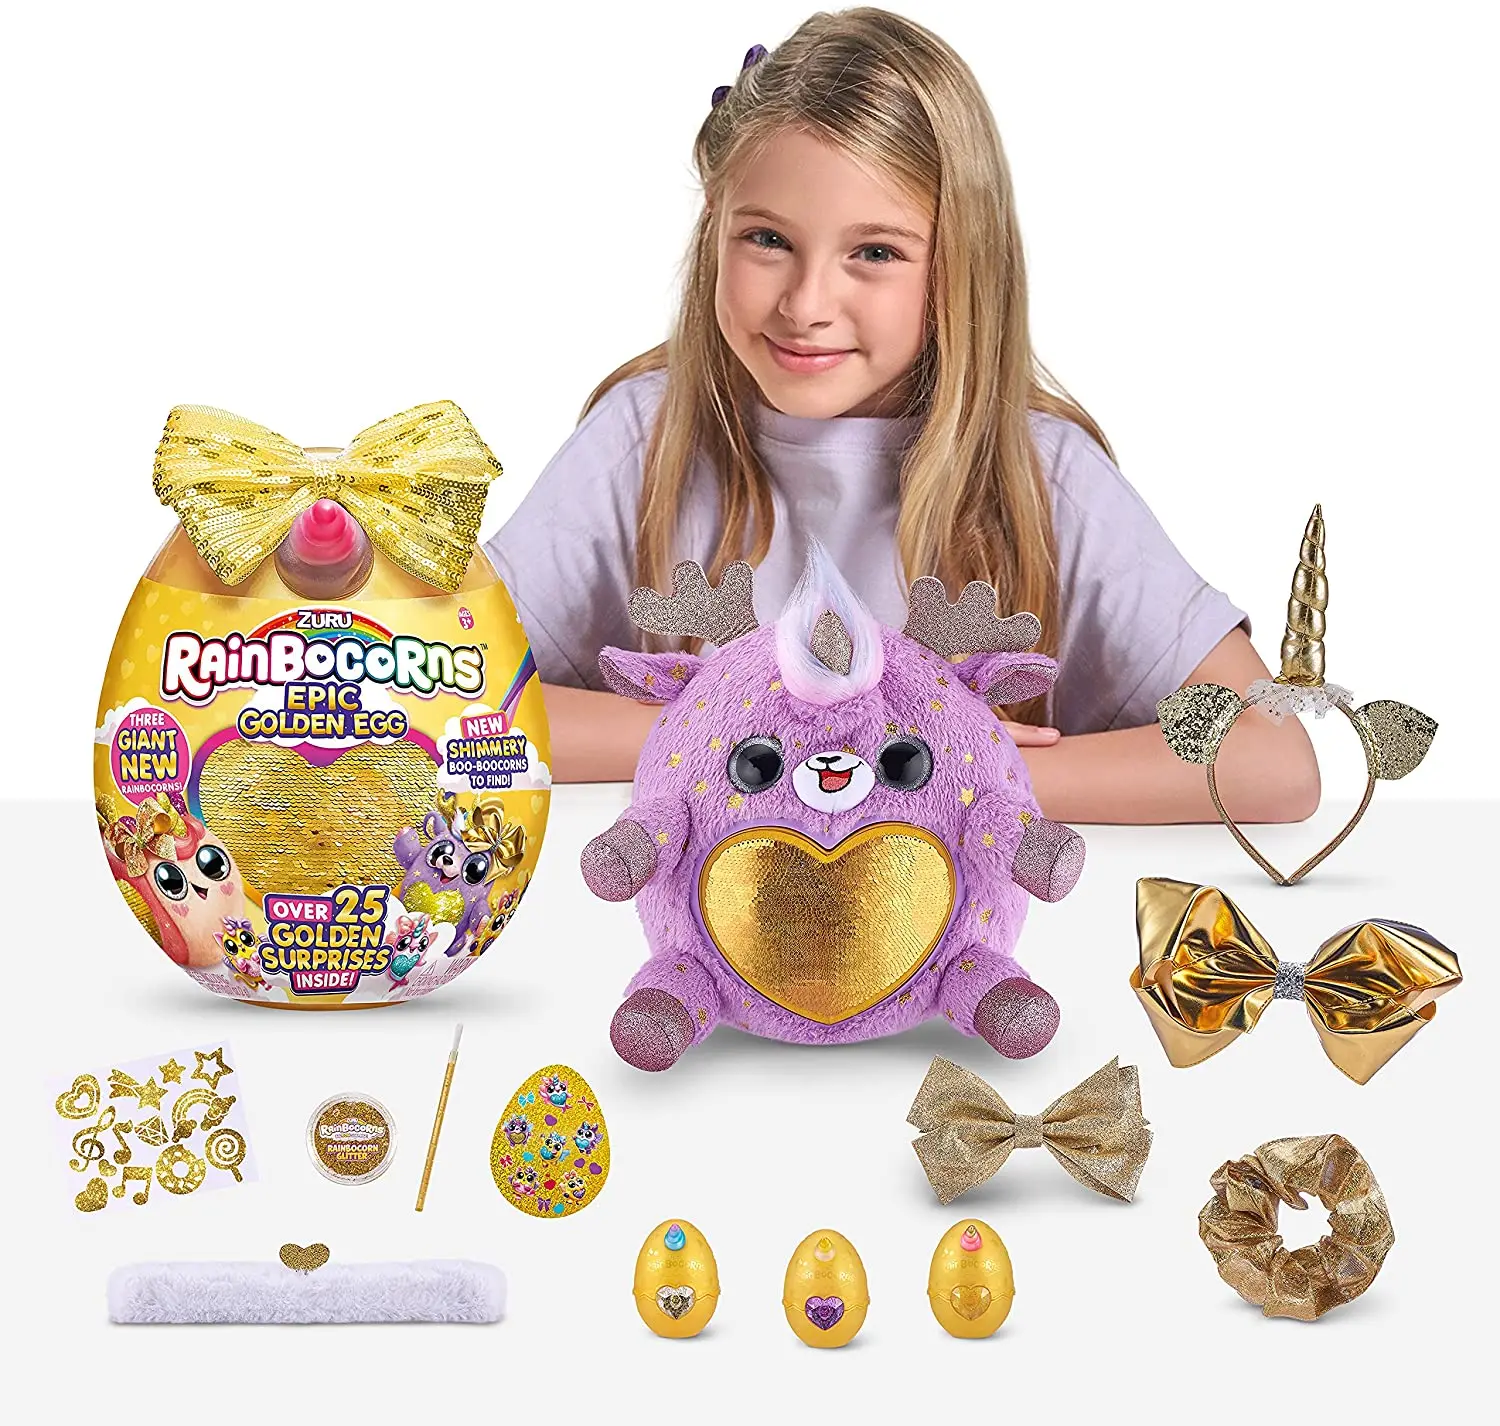 https://ae01.alicdn.com/kf/S50cb968e88c74d9ca678ded39cce4522m/ZURU-Rainbocorns-Egg-Epic-Golden-Egg-Seal-Snail-Reindeer-Giant-Egg-Surprises-Plush-Gift-Toys-Children.jpg